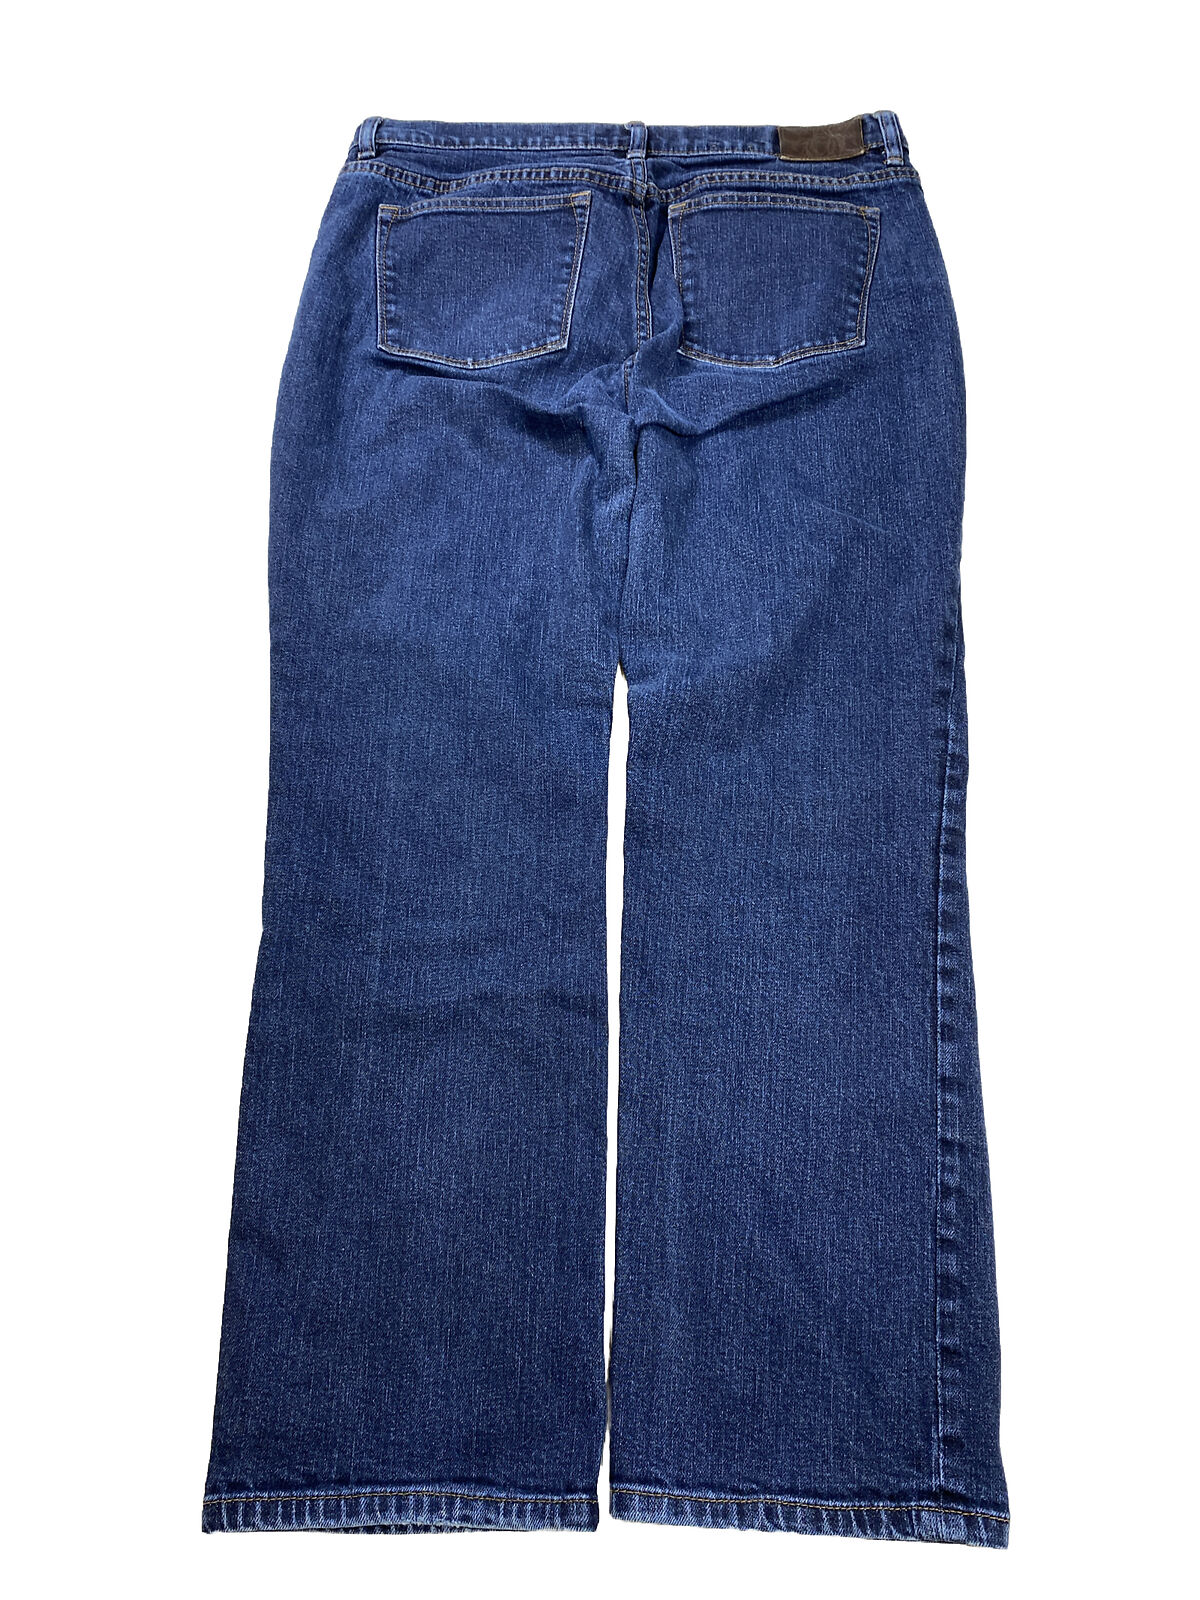 Lauren Ralph Lauren Women's Dark Wash Classic Straight Jeans - Petite 12P